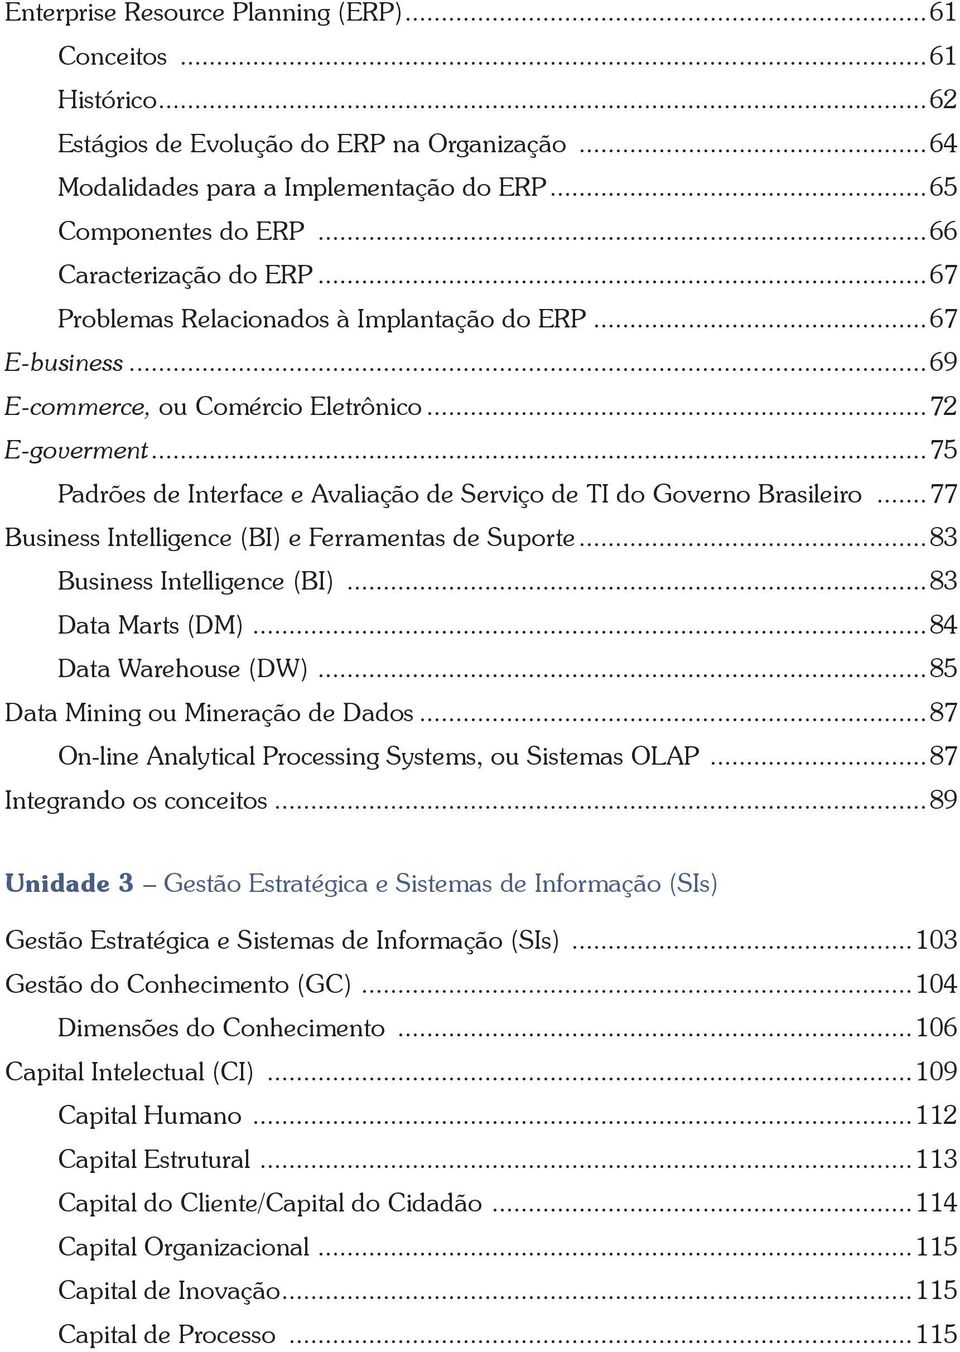 ..75 Padrões de Interface e Avaliação de Serviço de TI do Governo Brasileiro...77 Business Intelligence (BI) e Ferramentas de Suporte...83 Business Intelligence (BI)...83 Data Marts (DM).